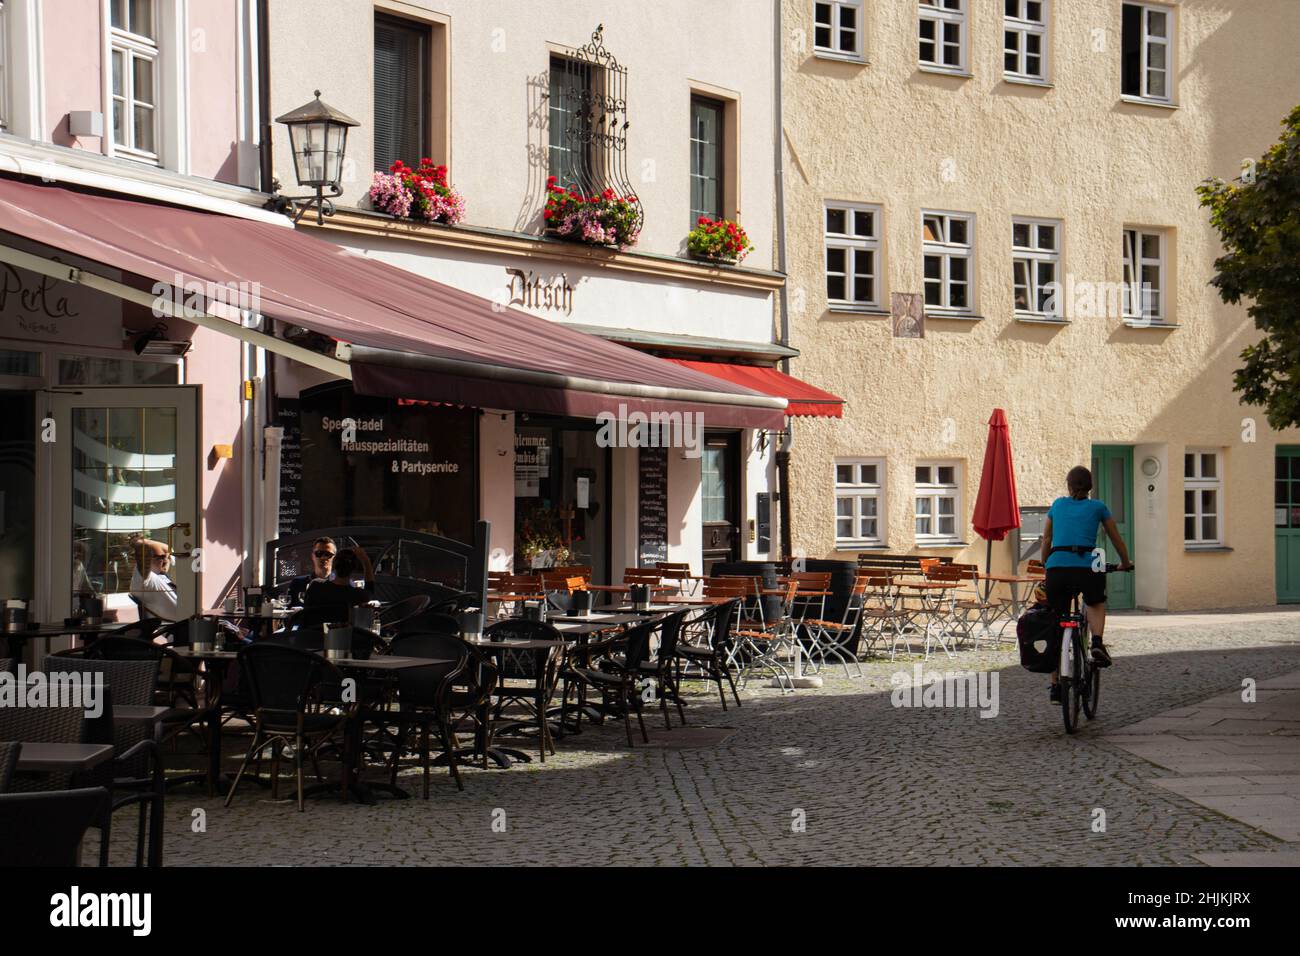 Eien Radfahrerin fährt an Restaurants vorbei. Die Fußgängerzone hat Kopfsteinpflaster. Stock Photo